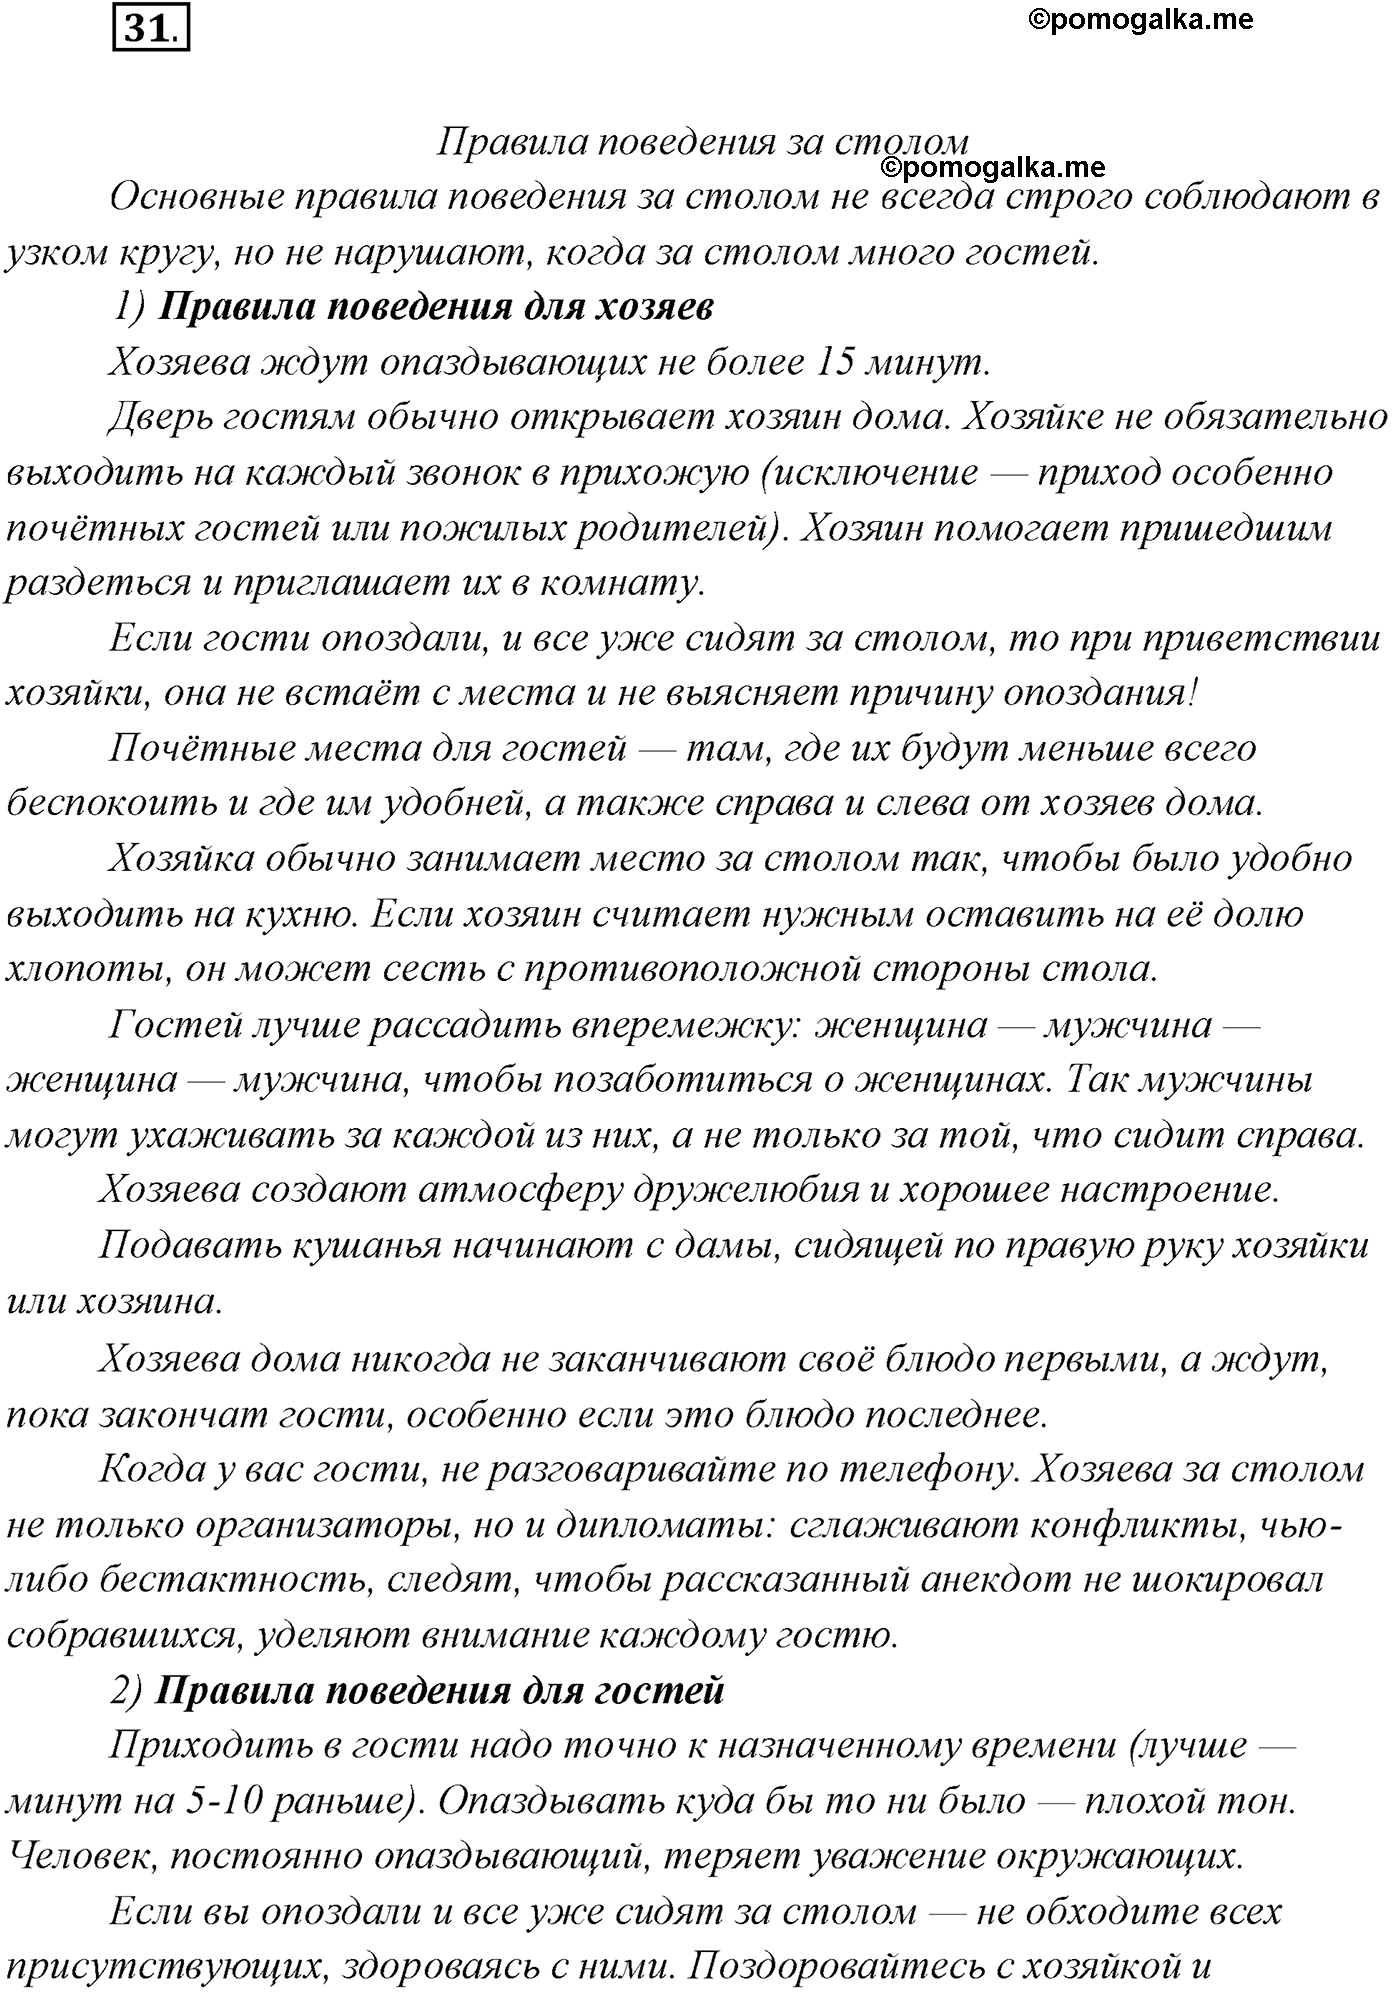 упражнение №31 русский язык 10 класс Гусарова 2021 год